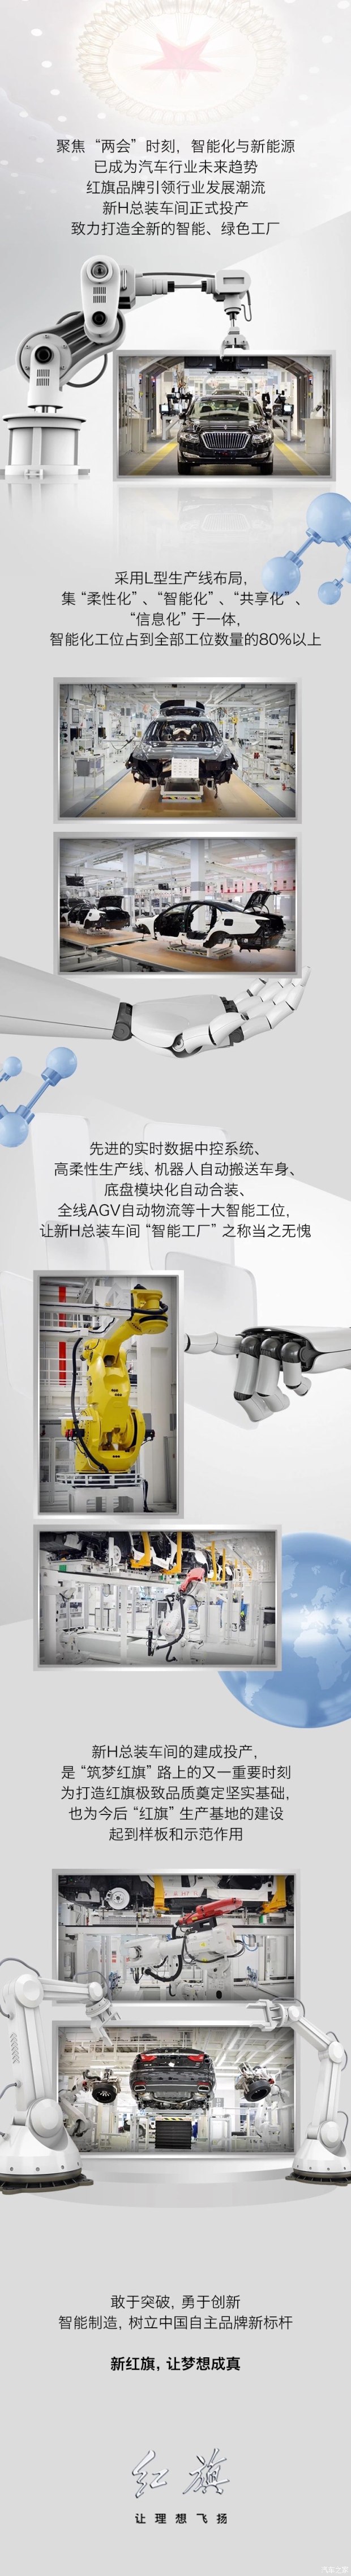 智能制造 树立中国自主品牌新标杆(图1)